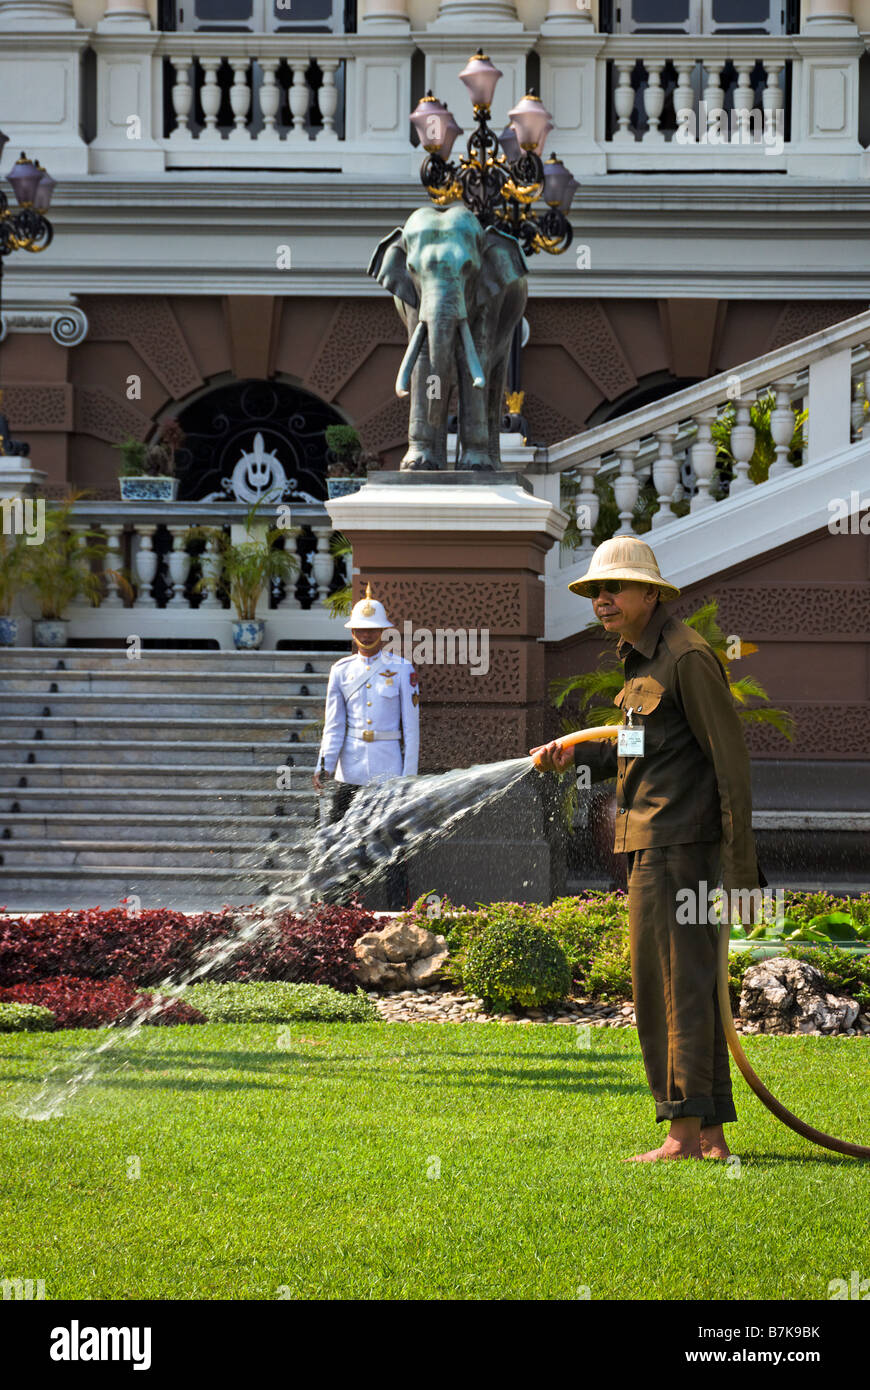 Wässern den Rasen des Grand Palace in Bangkok Zentralthailand Mann Stockfoto